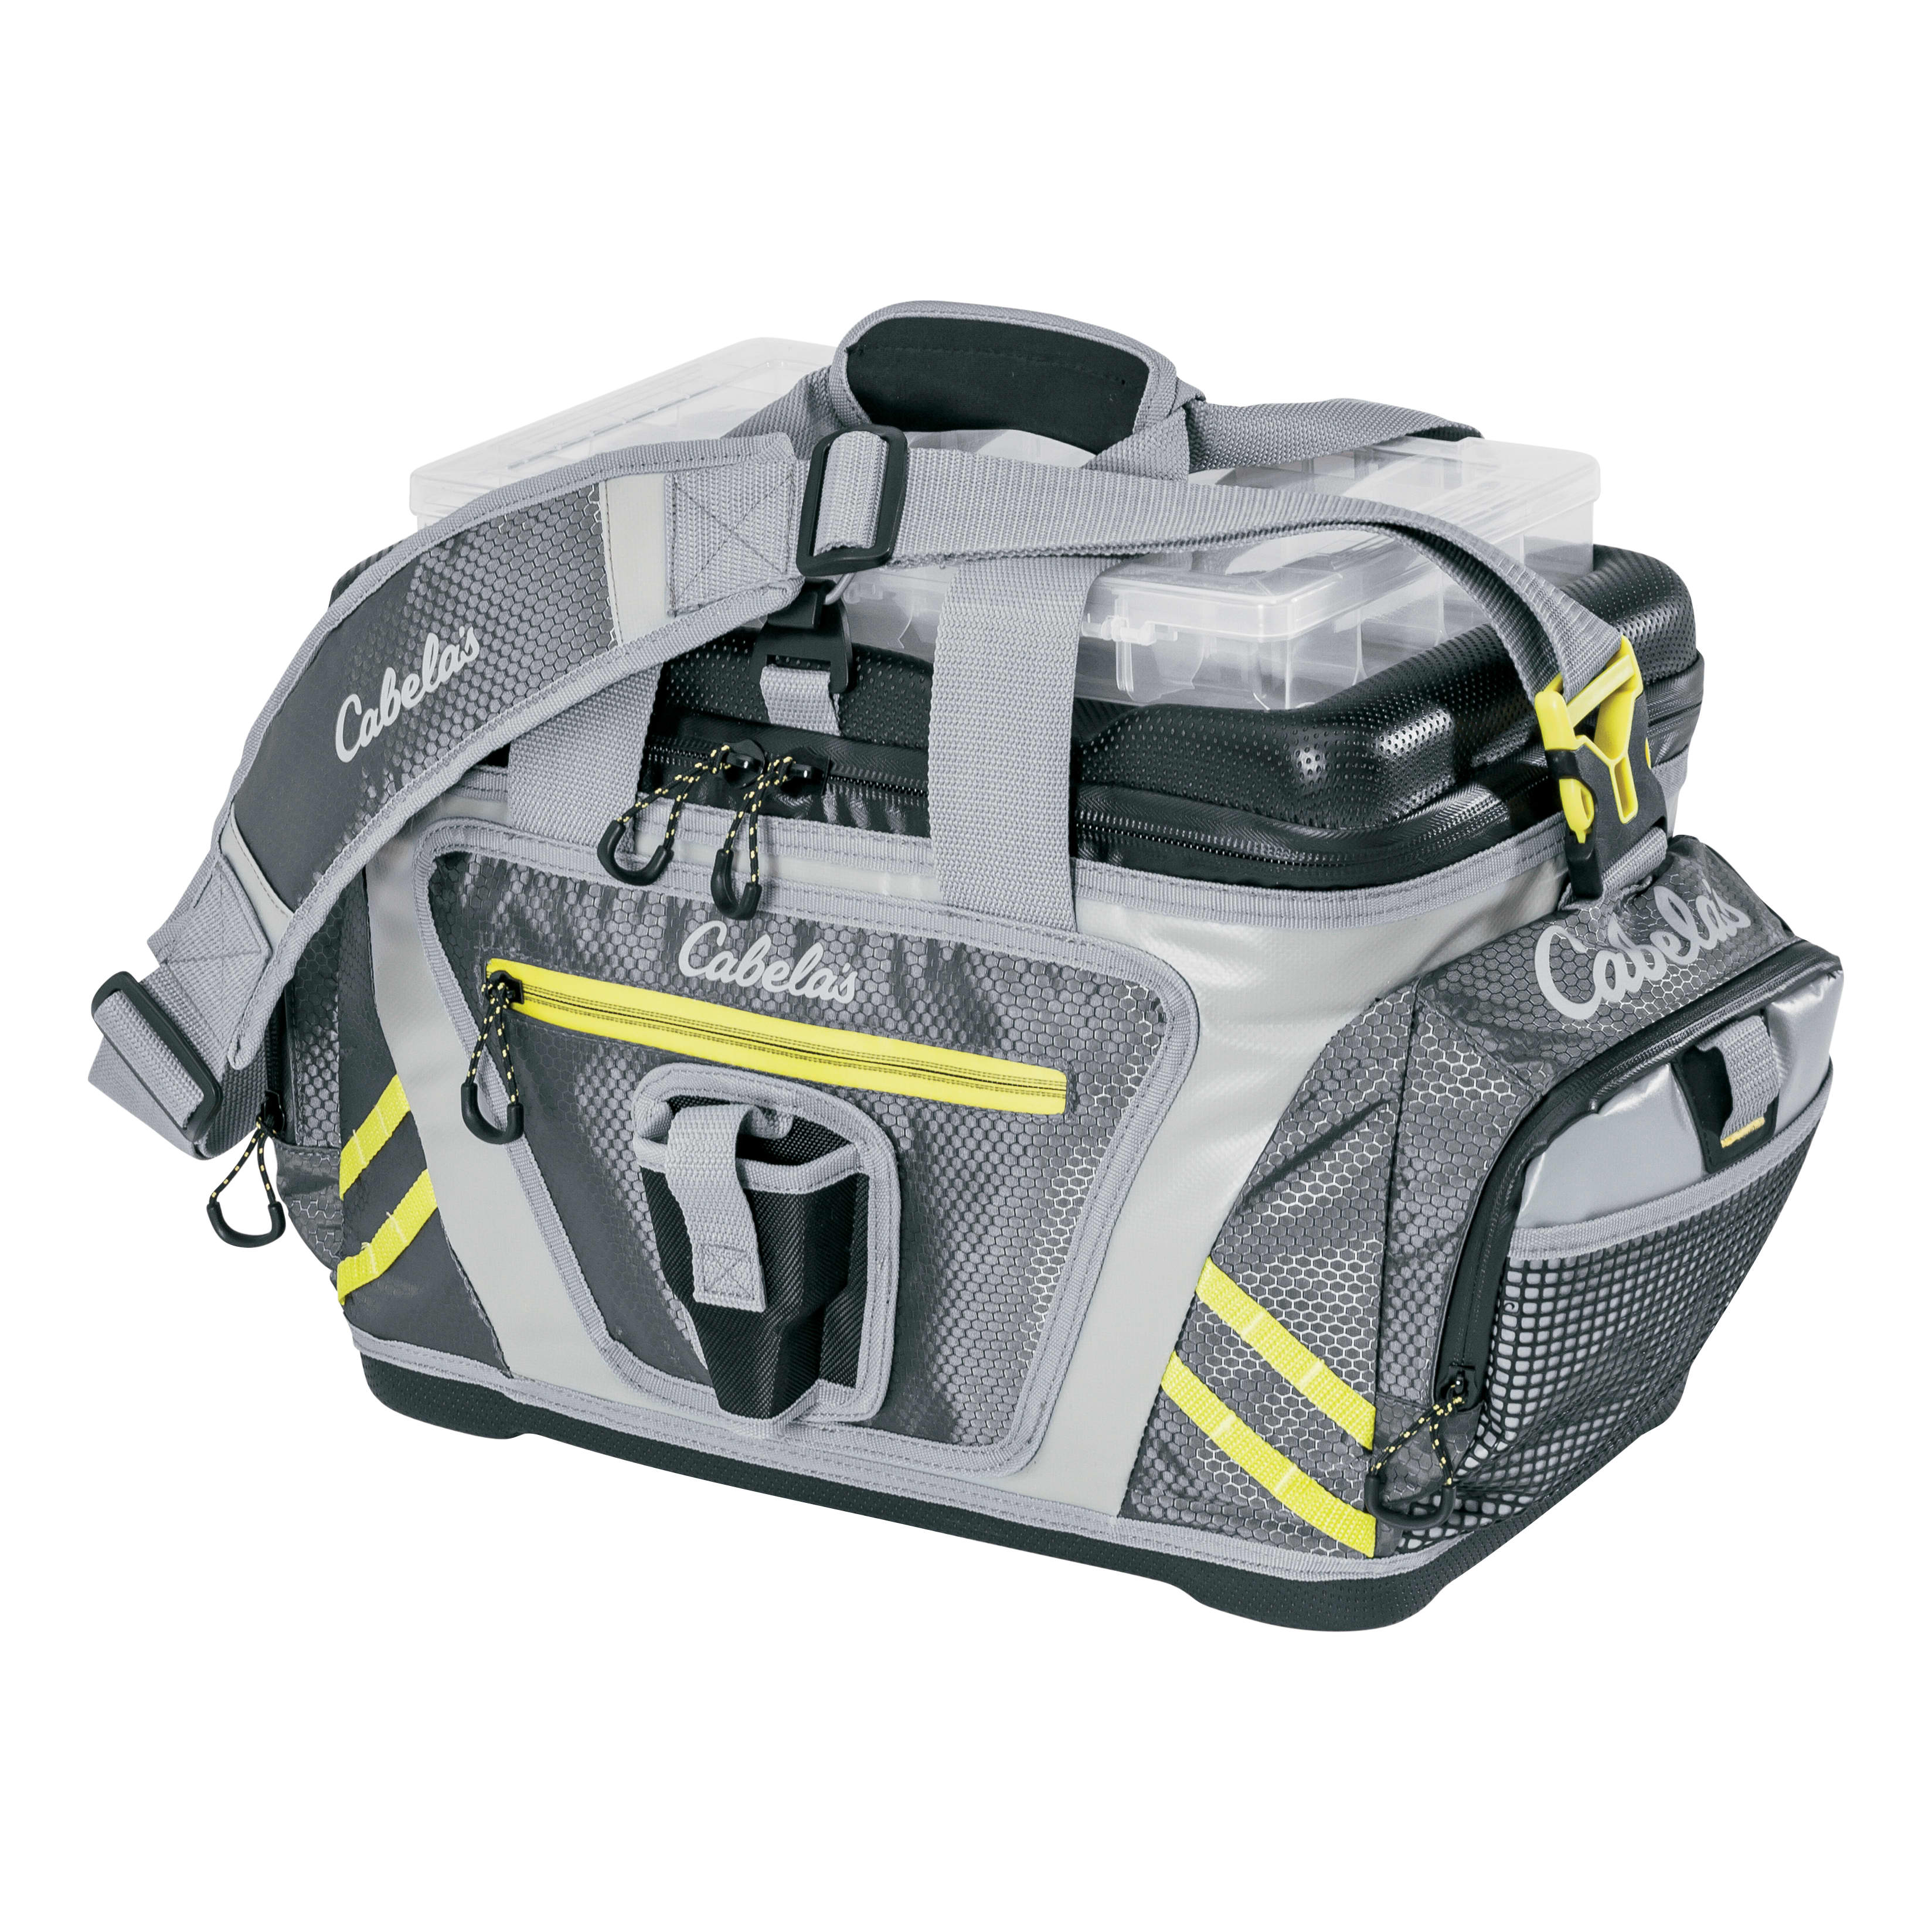 Cabela’s Marine-Grade Tackle Bag with Utility Box - Cabelas 